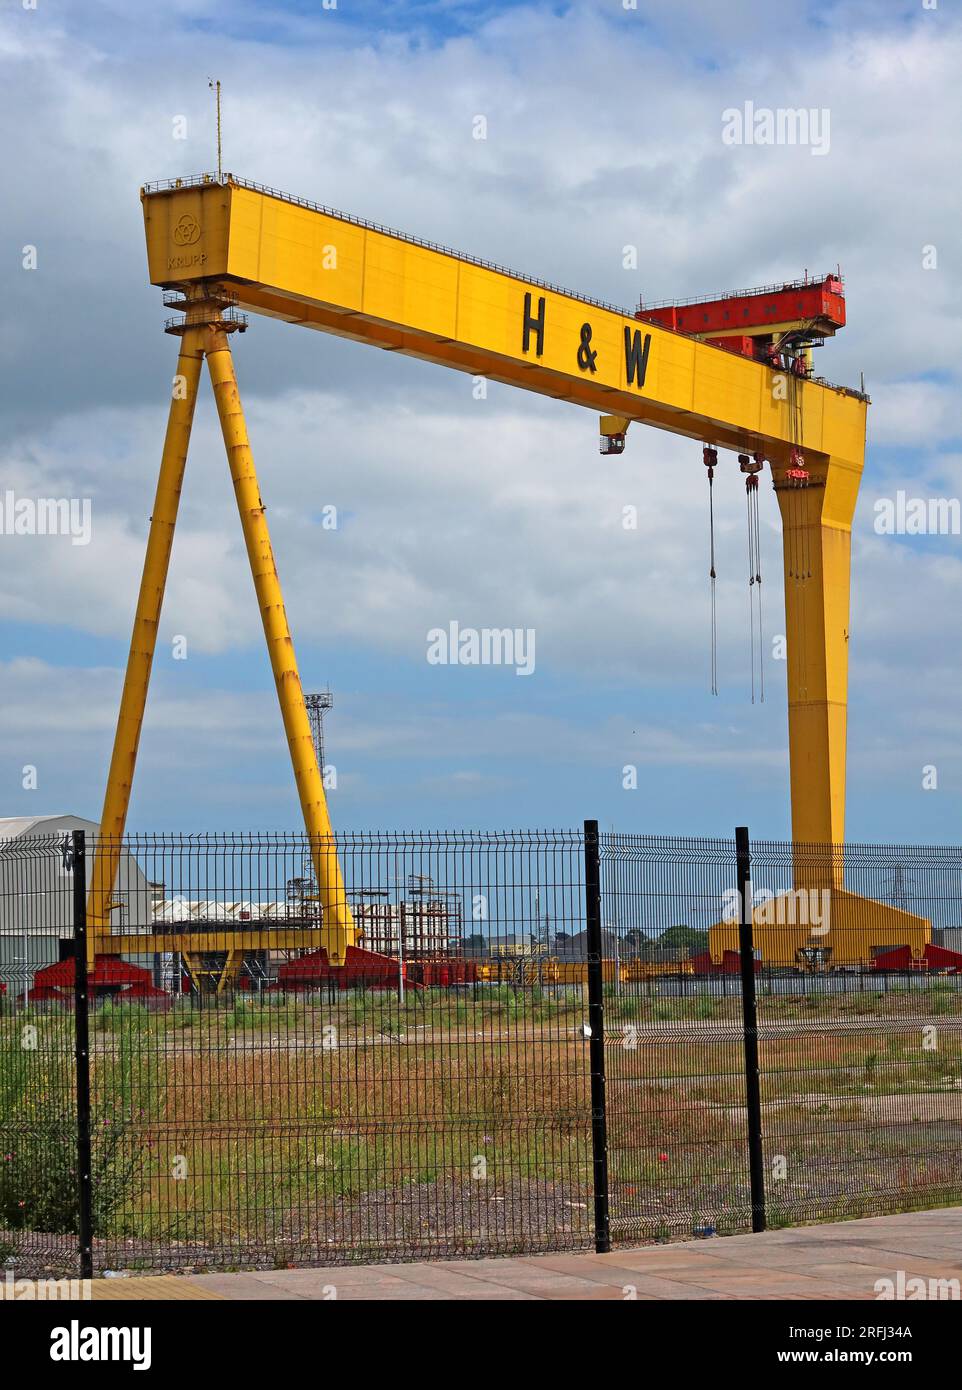 Grues jaunes Harland et Wolff, dans le chantier naval, Samson & Goliath, Queen's Island, Belfast , Irlande du Nord, Royaume-Uni, BT3 9EU Banque D'Images